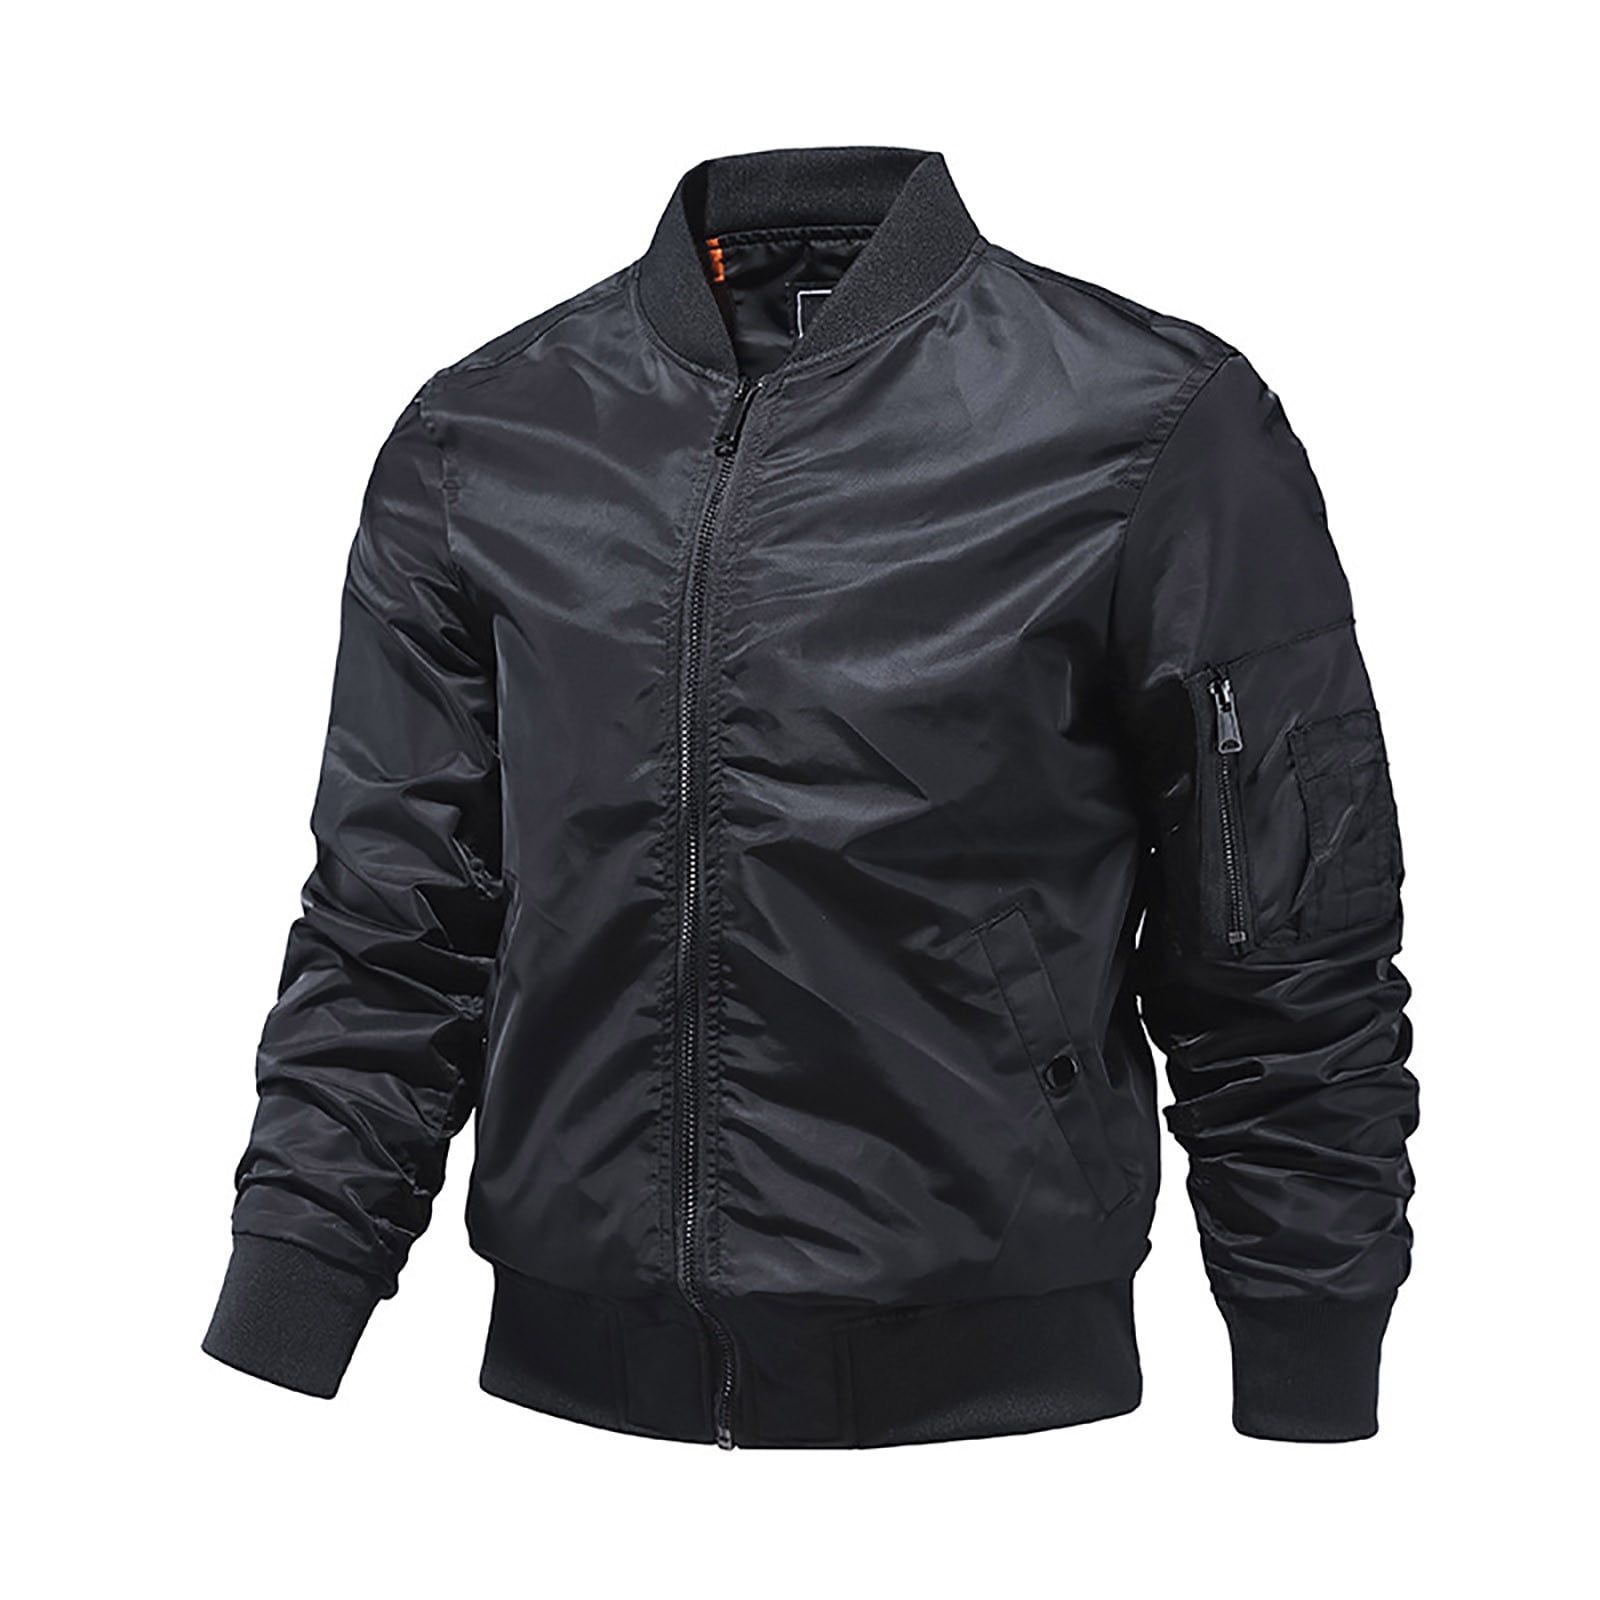 YYDGH Men's Plus Size Jackets-Windproof Bomber Jacket Full Zip Winter Warm  Padded Coats Outwear(Black,XXL)